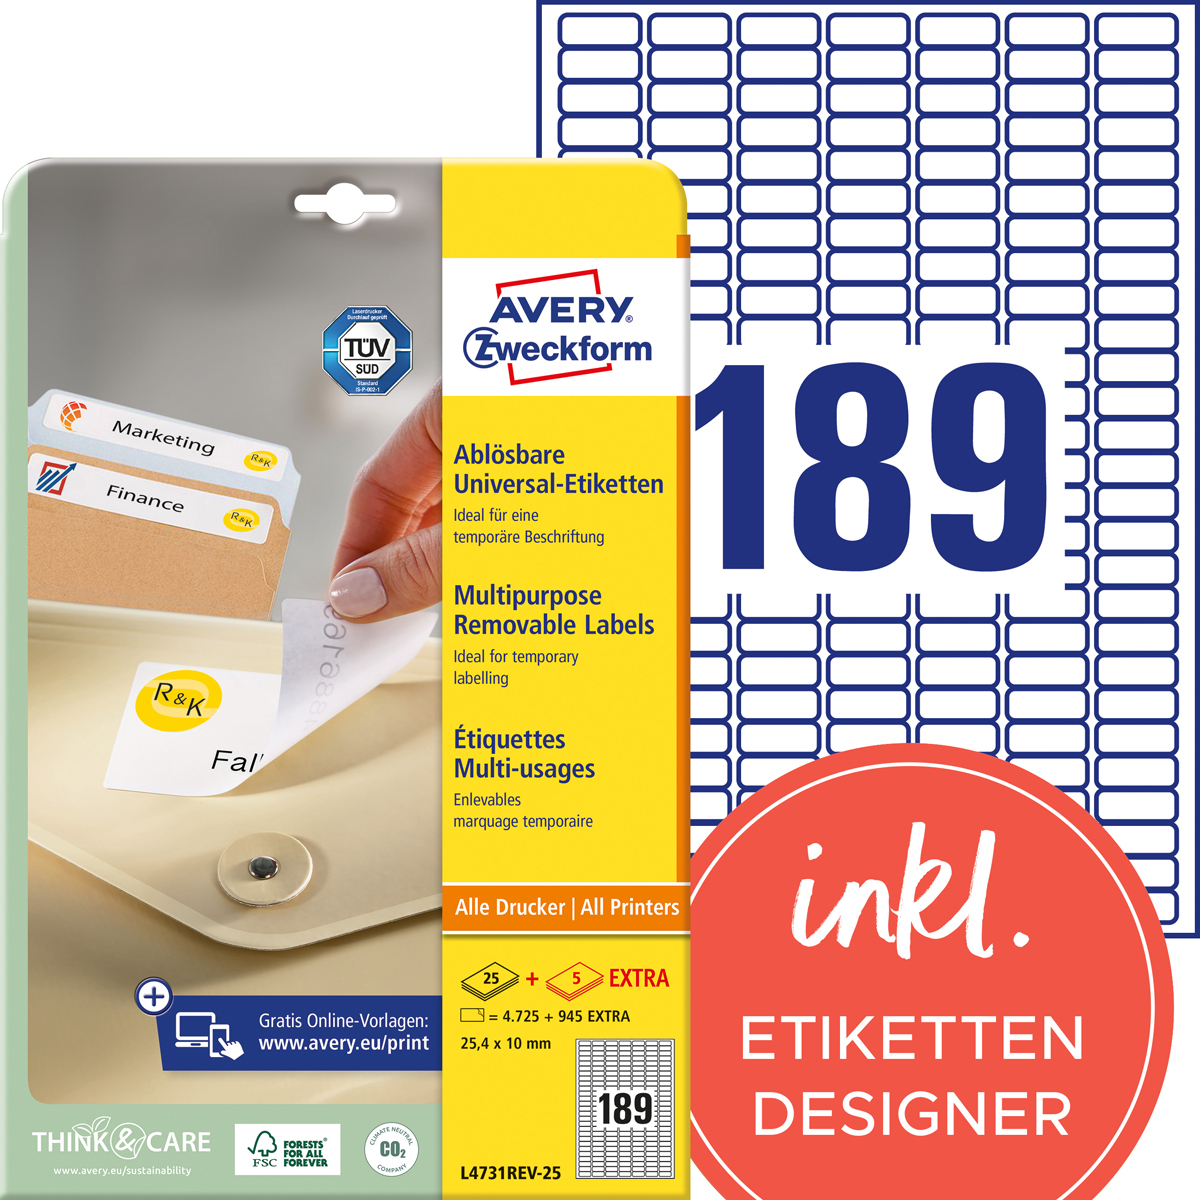 Avery Zweckform L4731REV-25 Universal-Etiketten, 25,4 x 10 mm, 30 Bogen/5.670 Etiketten, weiß